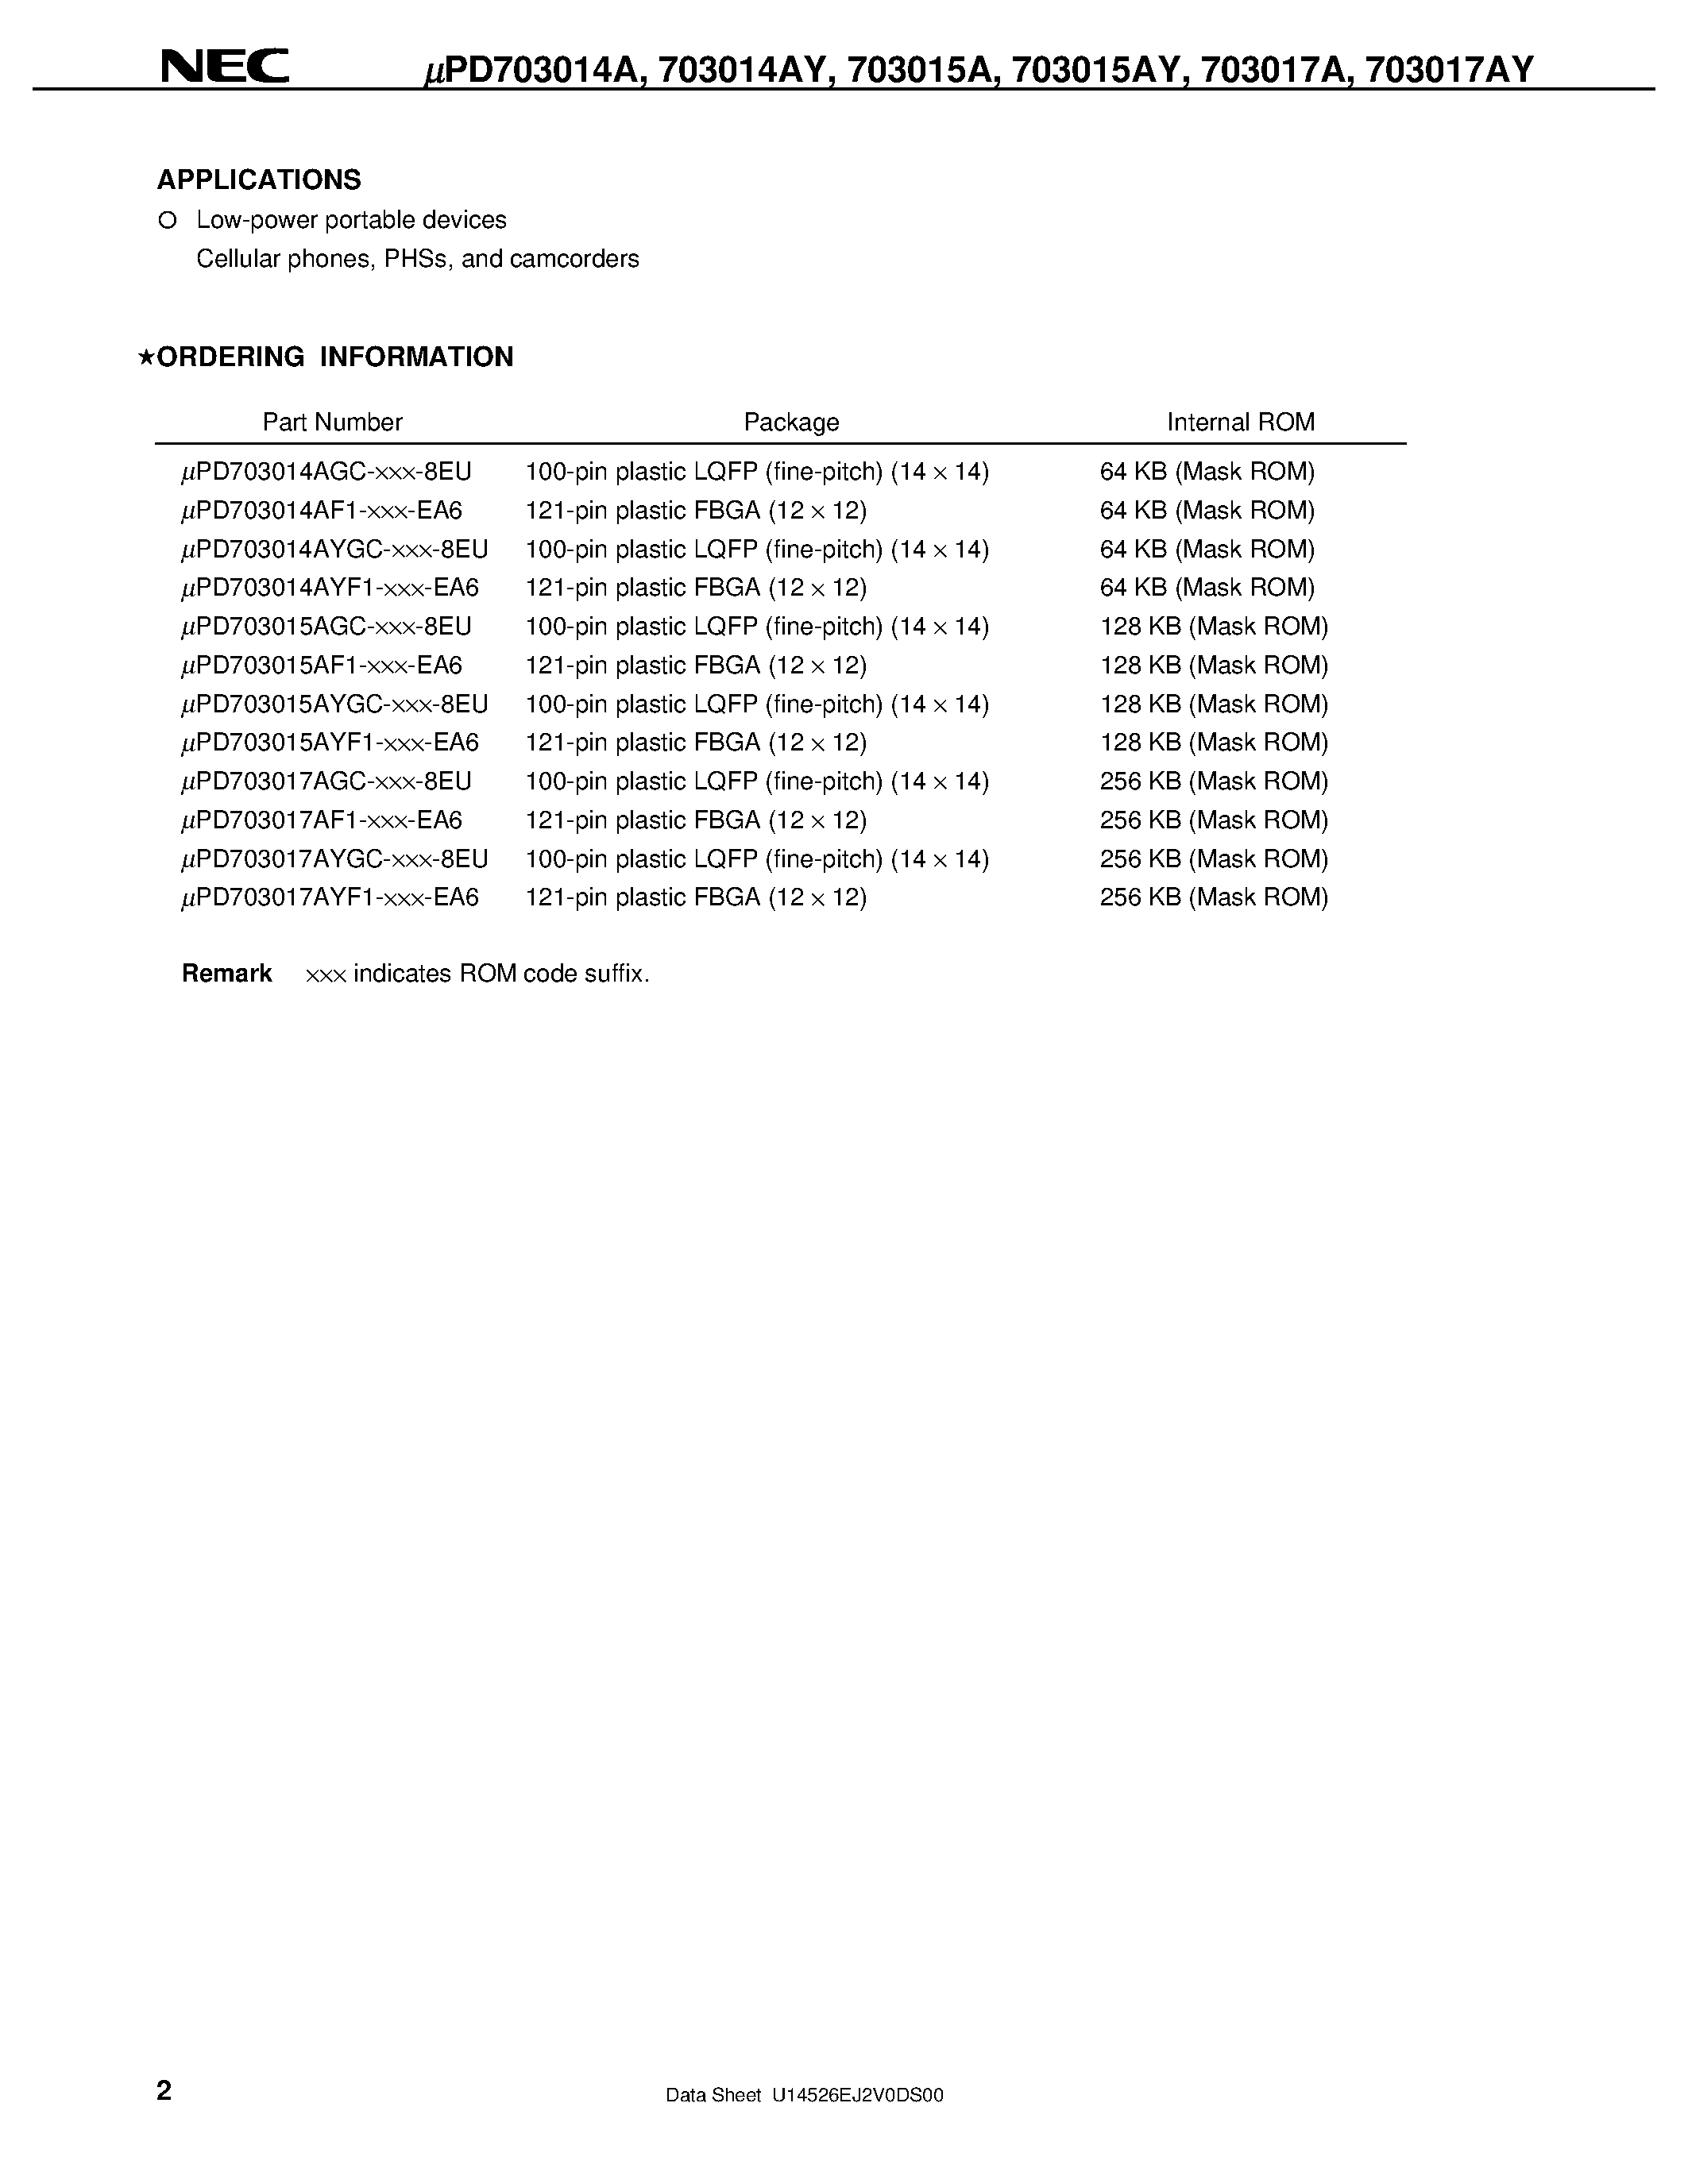 Datasheet UPD703017AY - V850/SA1TM 32-/16-BIT SINGLE-CHIP MICROCONTROLLER page 2